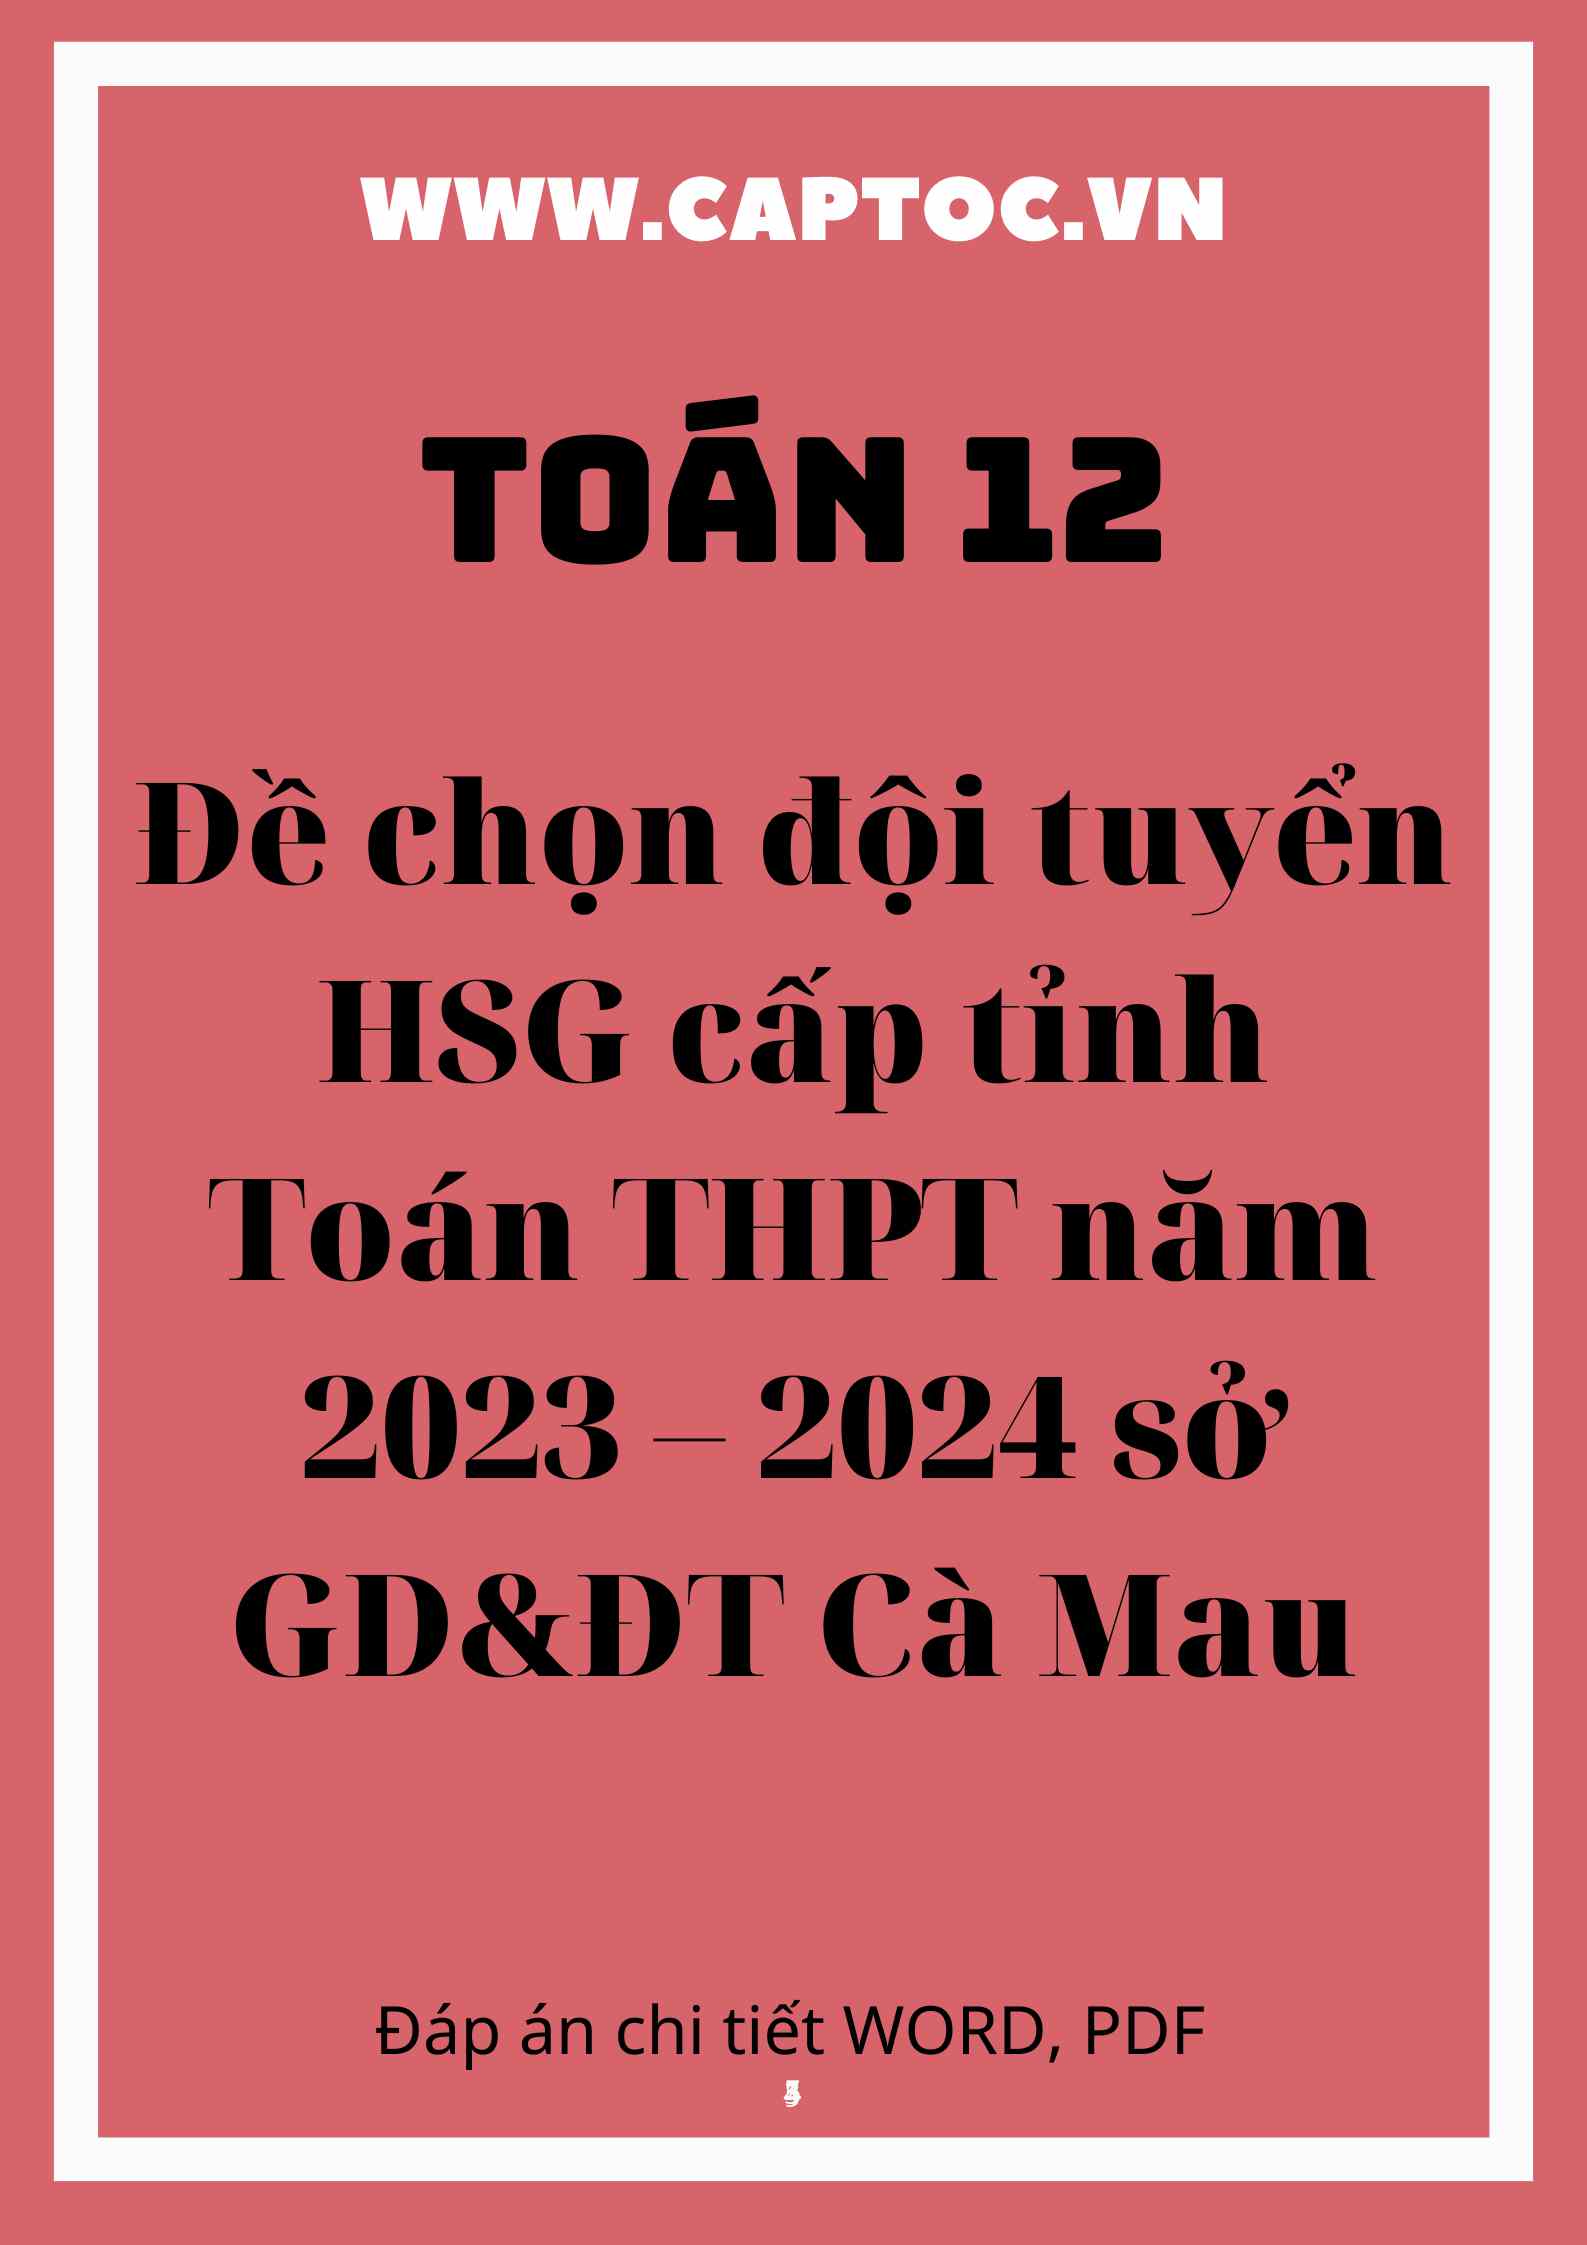 Đề chọn đội tuyển HSG cấp tỉnh Toán THPT năm 2023 – 2024 sở GD&ĐT Cà Mau